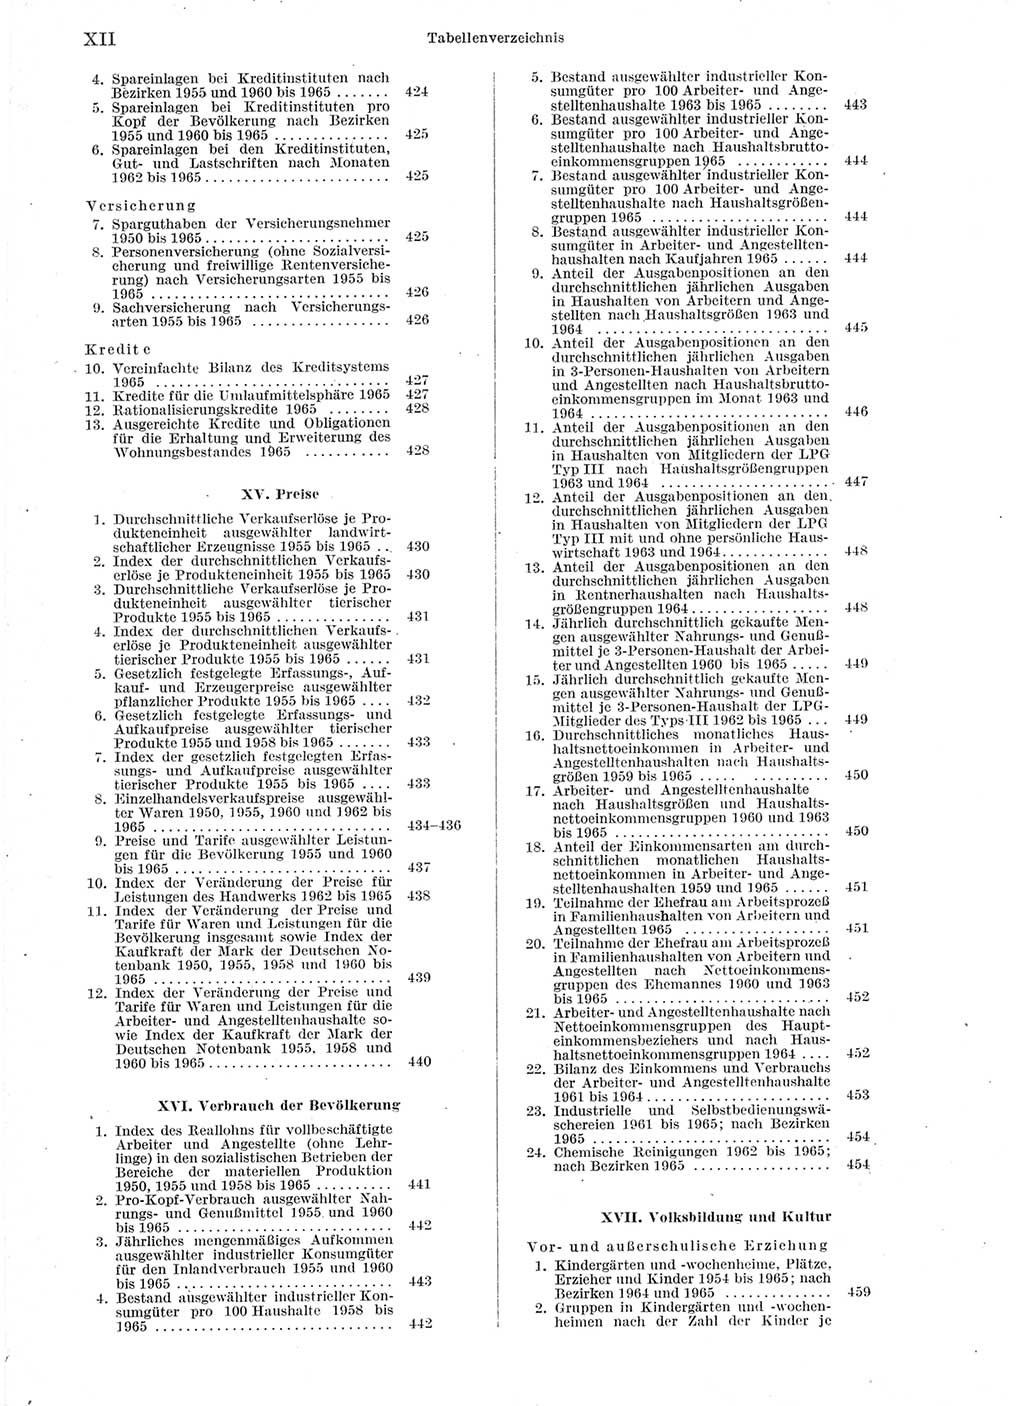 Statistisches Jahrbuch der Deutschen Demokratischen Republik (DDR) 1966, Seite 12 (Stat. Jb. DDR 1966, S. 12)